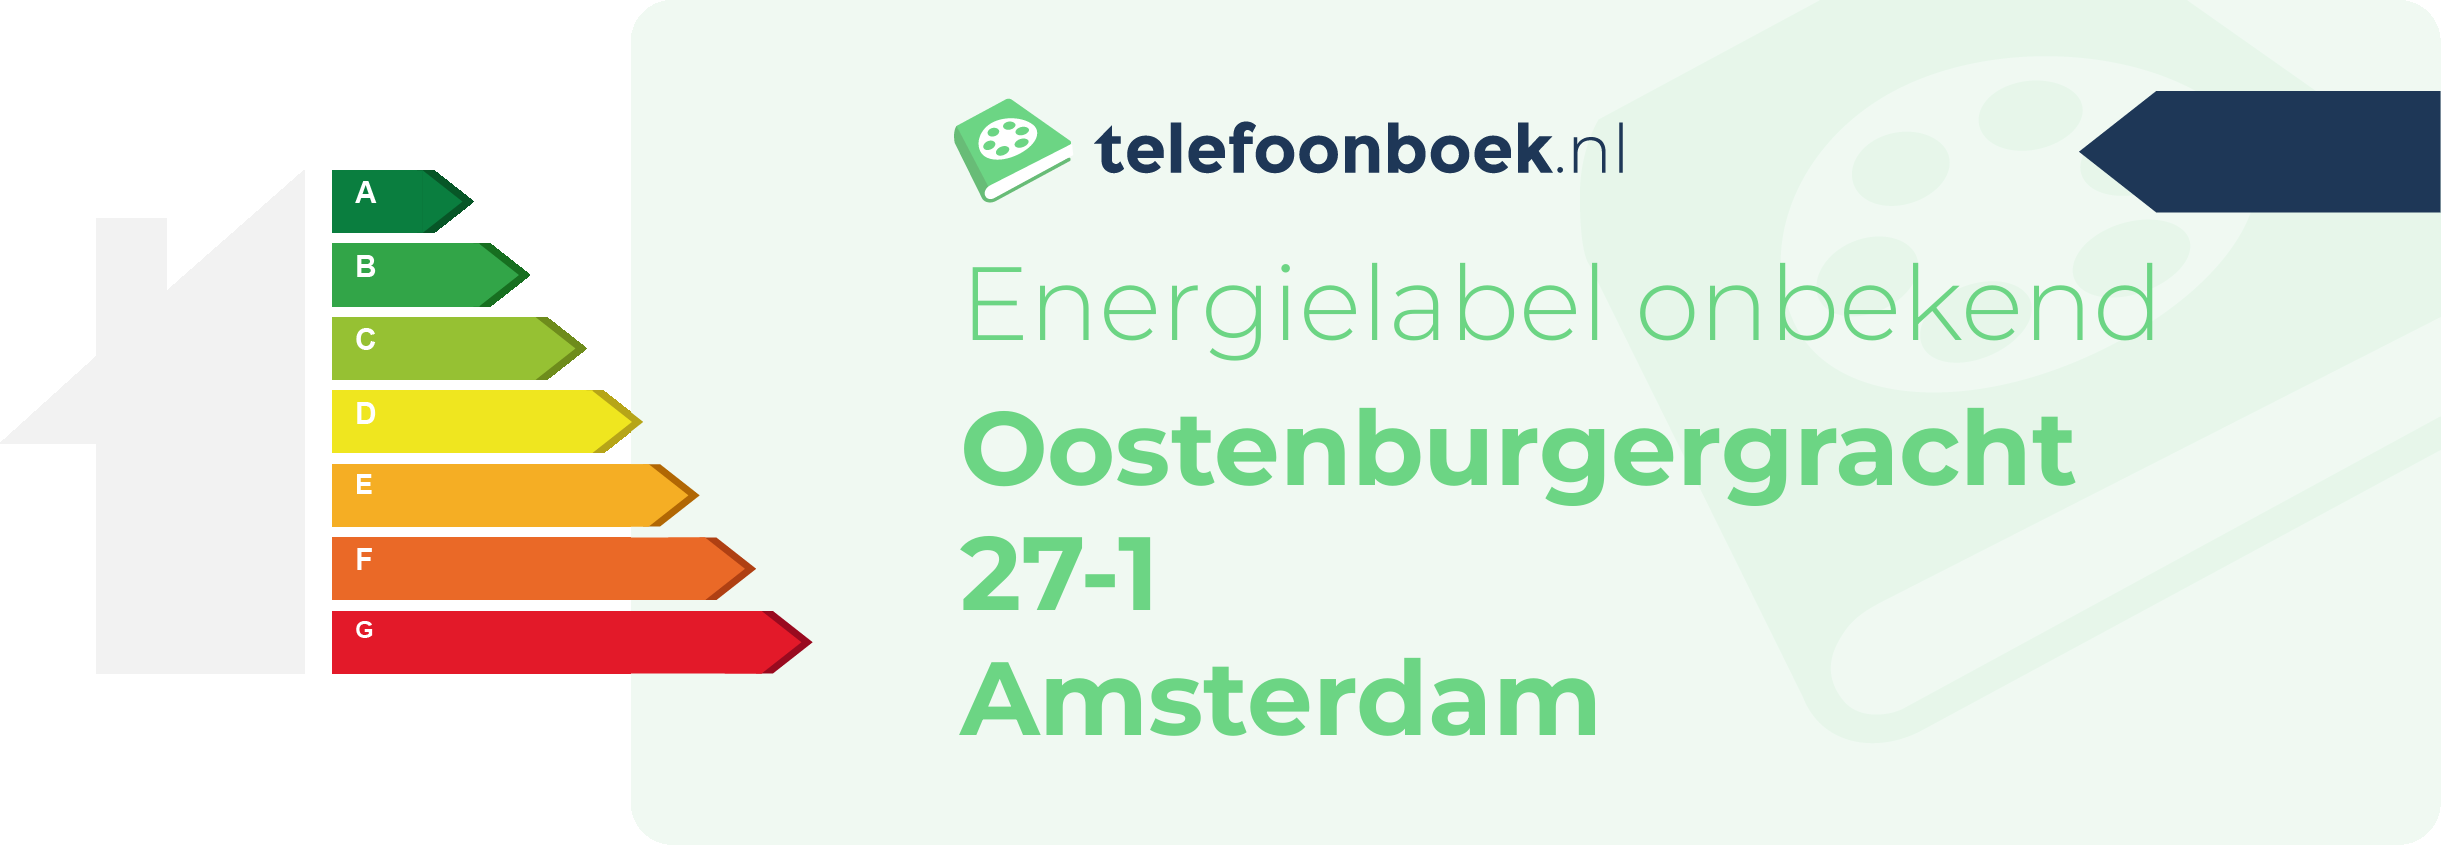 Energielabel Oostenburgergracht 27-1 Amsterdam